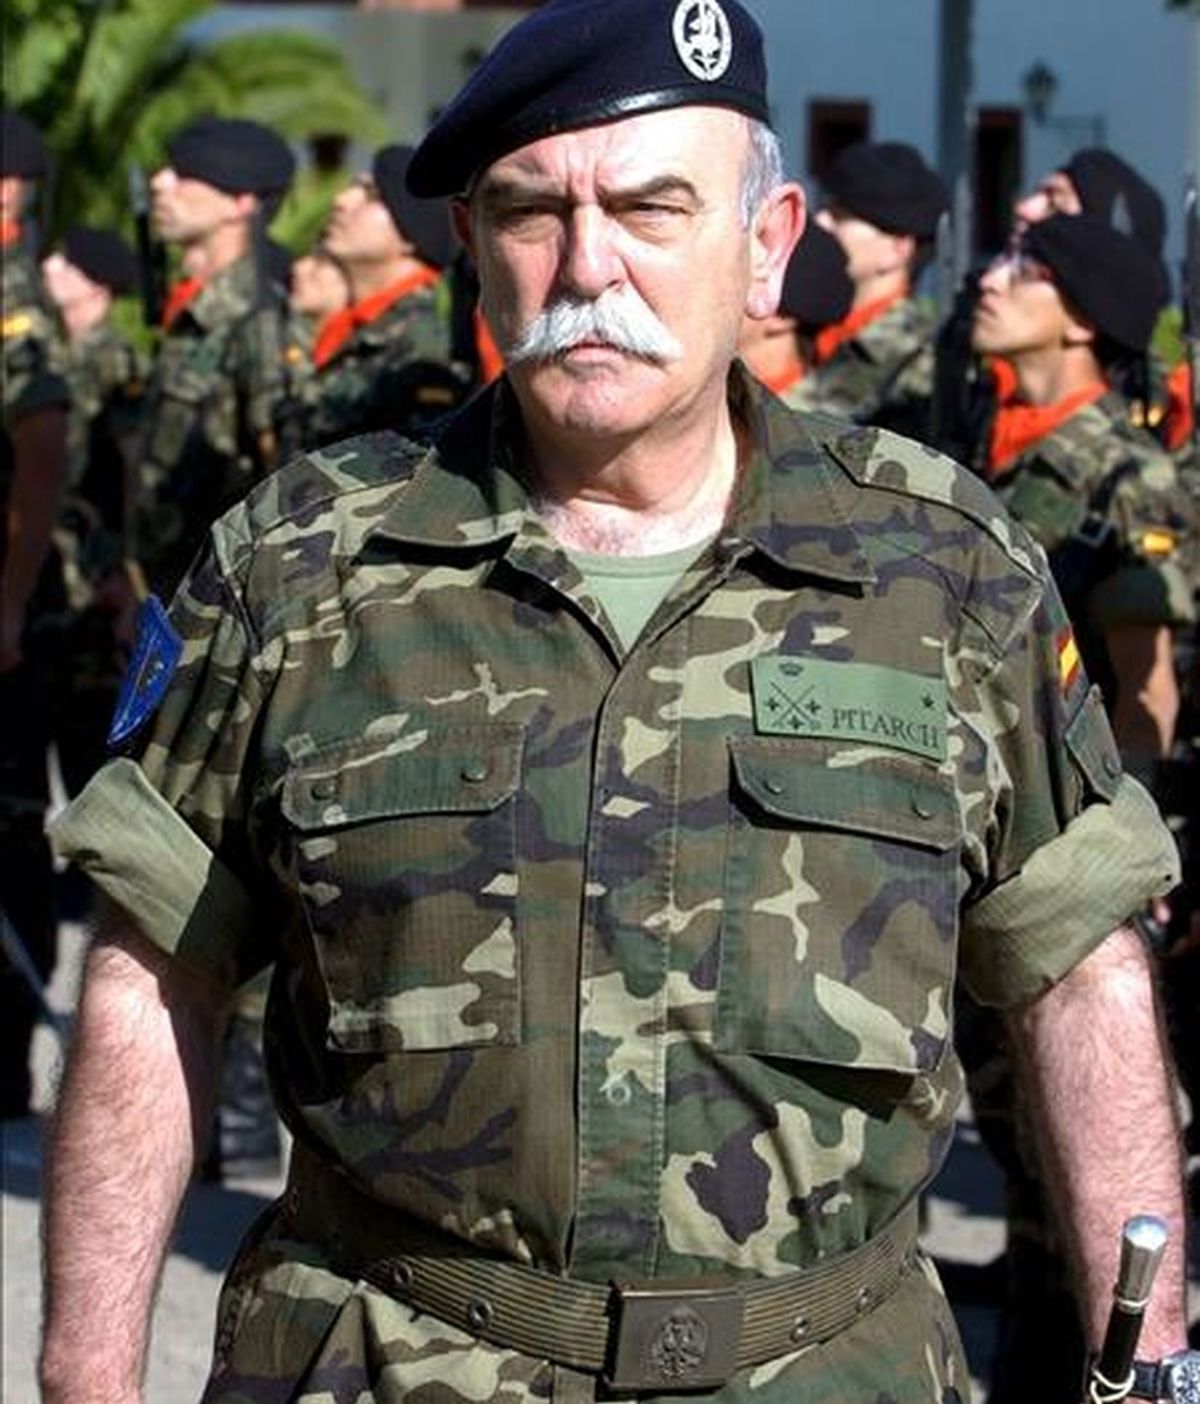 El comandante jefe del Eurocuerpo, el teniente general Pedro Pitarch, durante su visita a la Base General Menacho de Bótoa (Badajoz) en junio de 2008, donde visitó las unidades que integra la Brigada Mecanizada Extremadura XI, adscritas al Cuerpo del Ejército Europeo (denominada tambien Eurocuerpo). EFE/Archivo